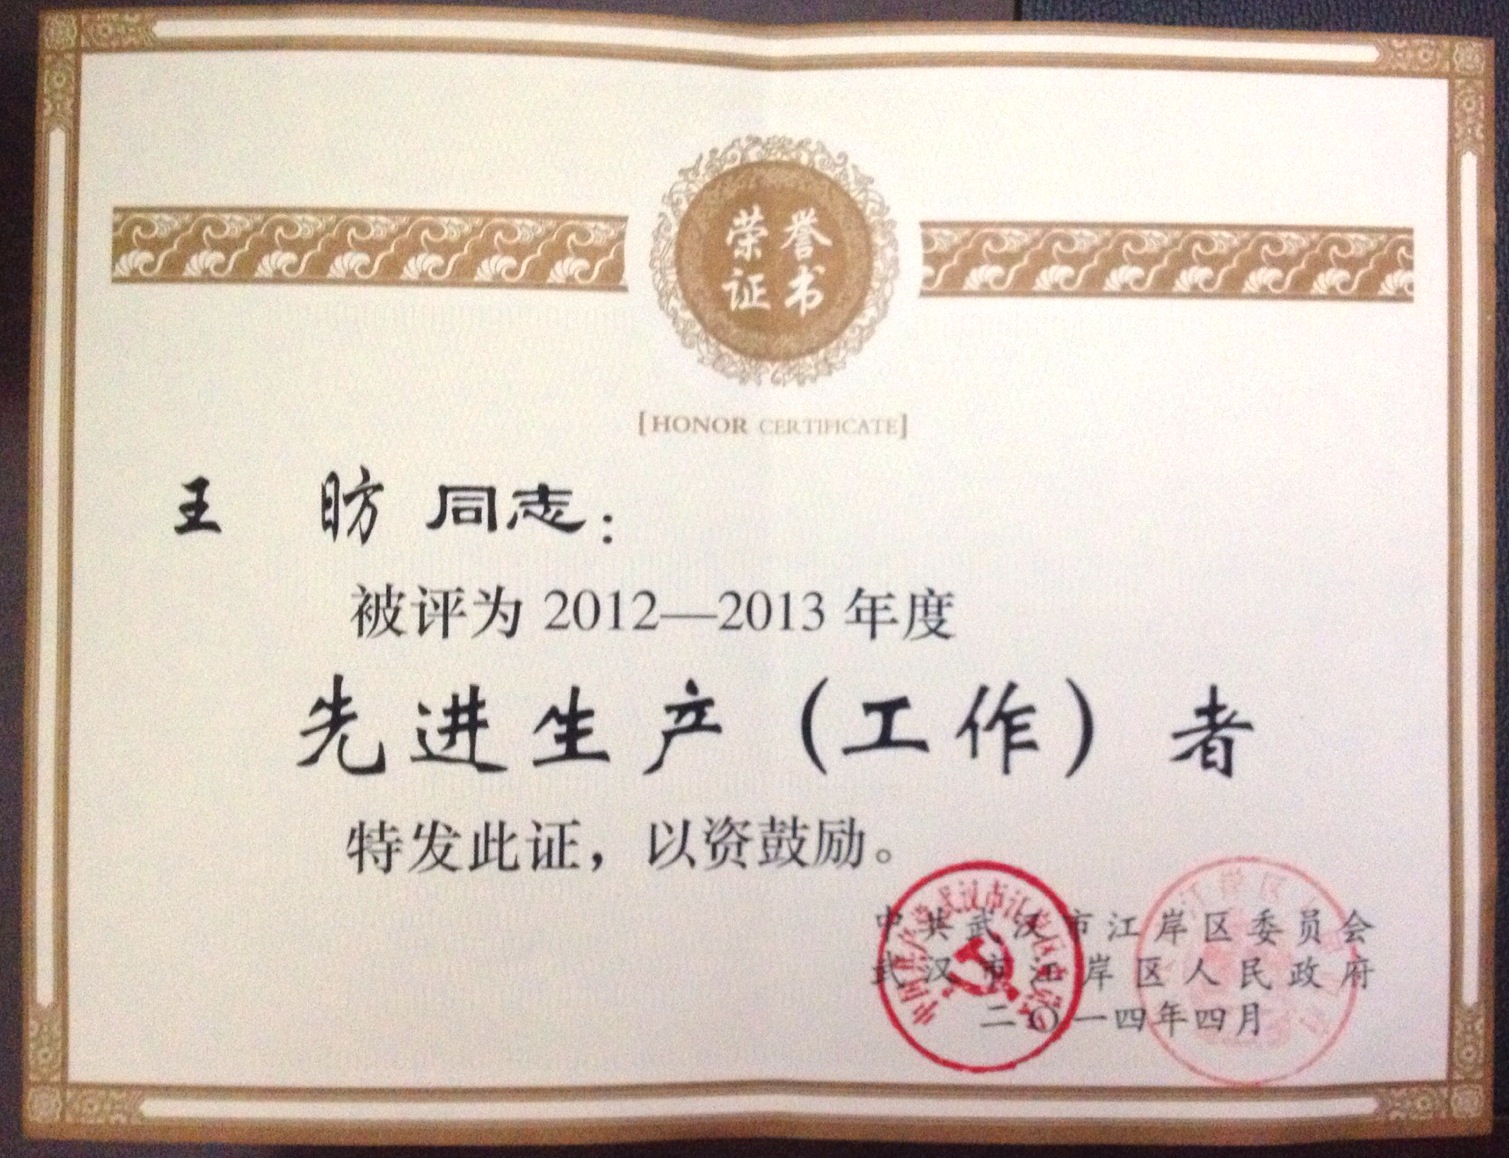 王昉同志被评为“2012-2013年度先进工作者”